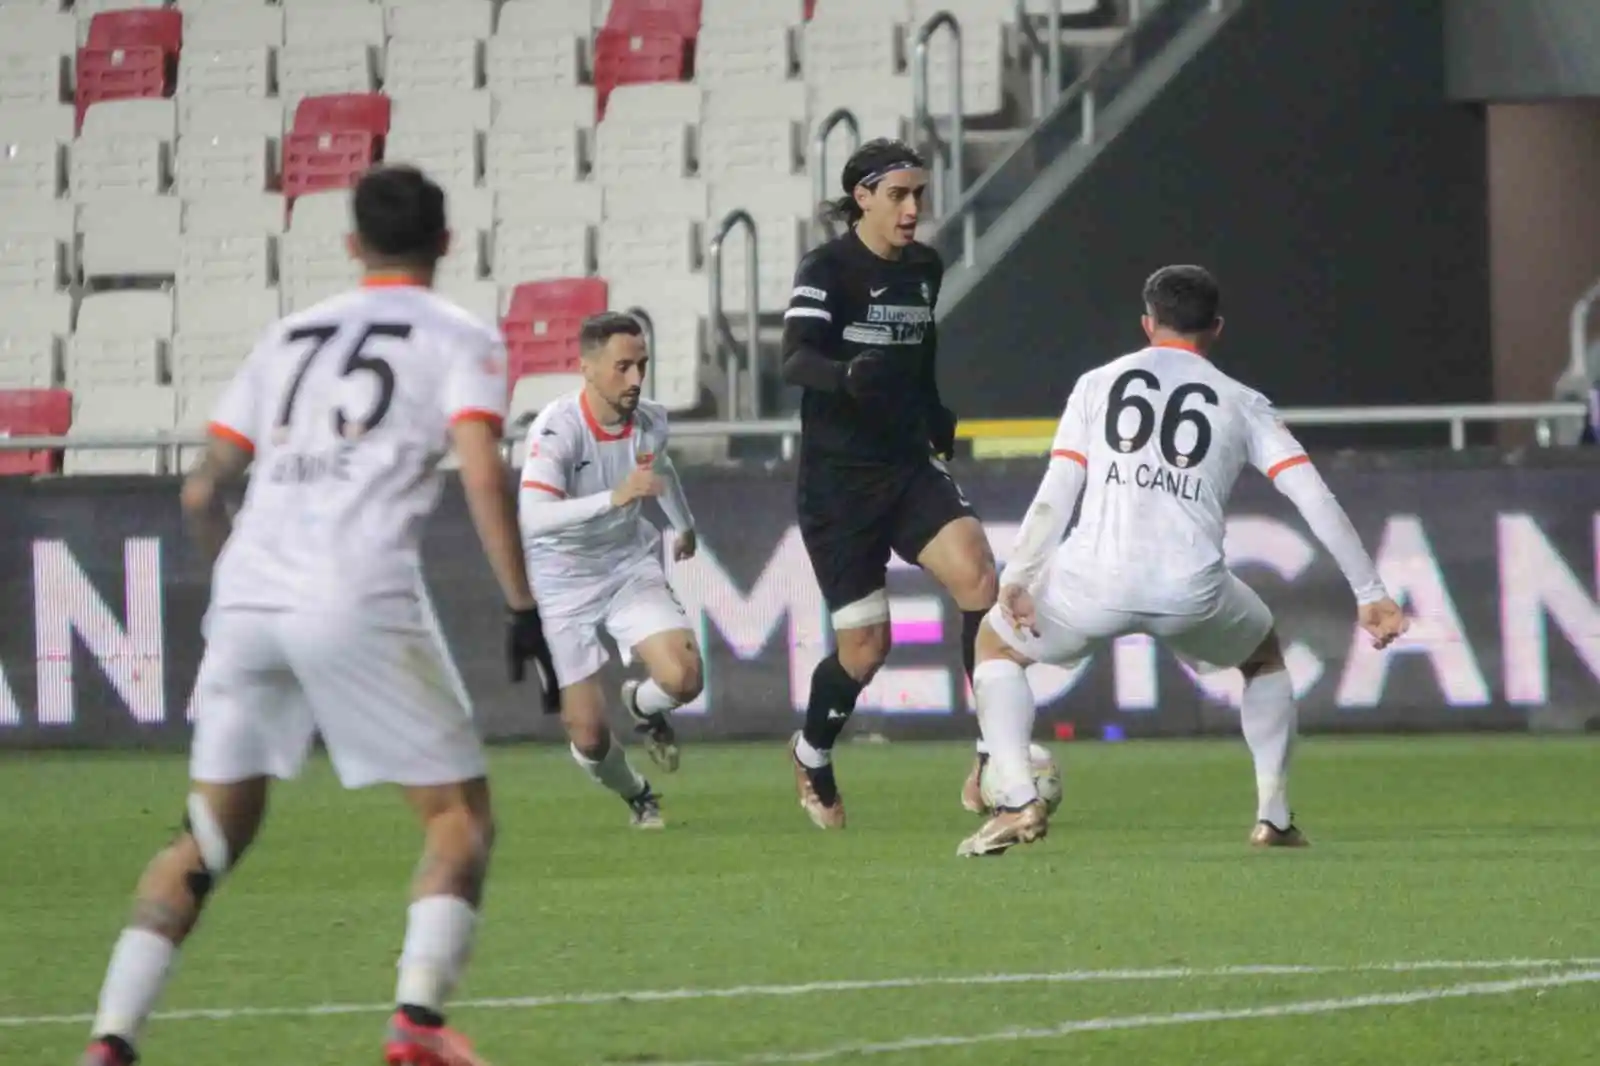 Spor Toto 1. Lig: Altay: 0 - Adanaspor: 1
